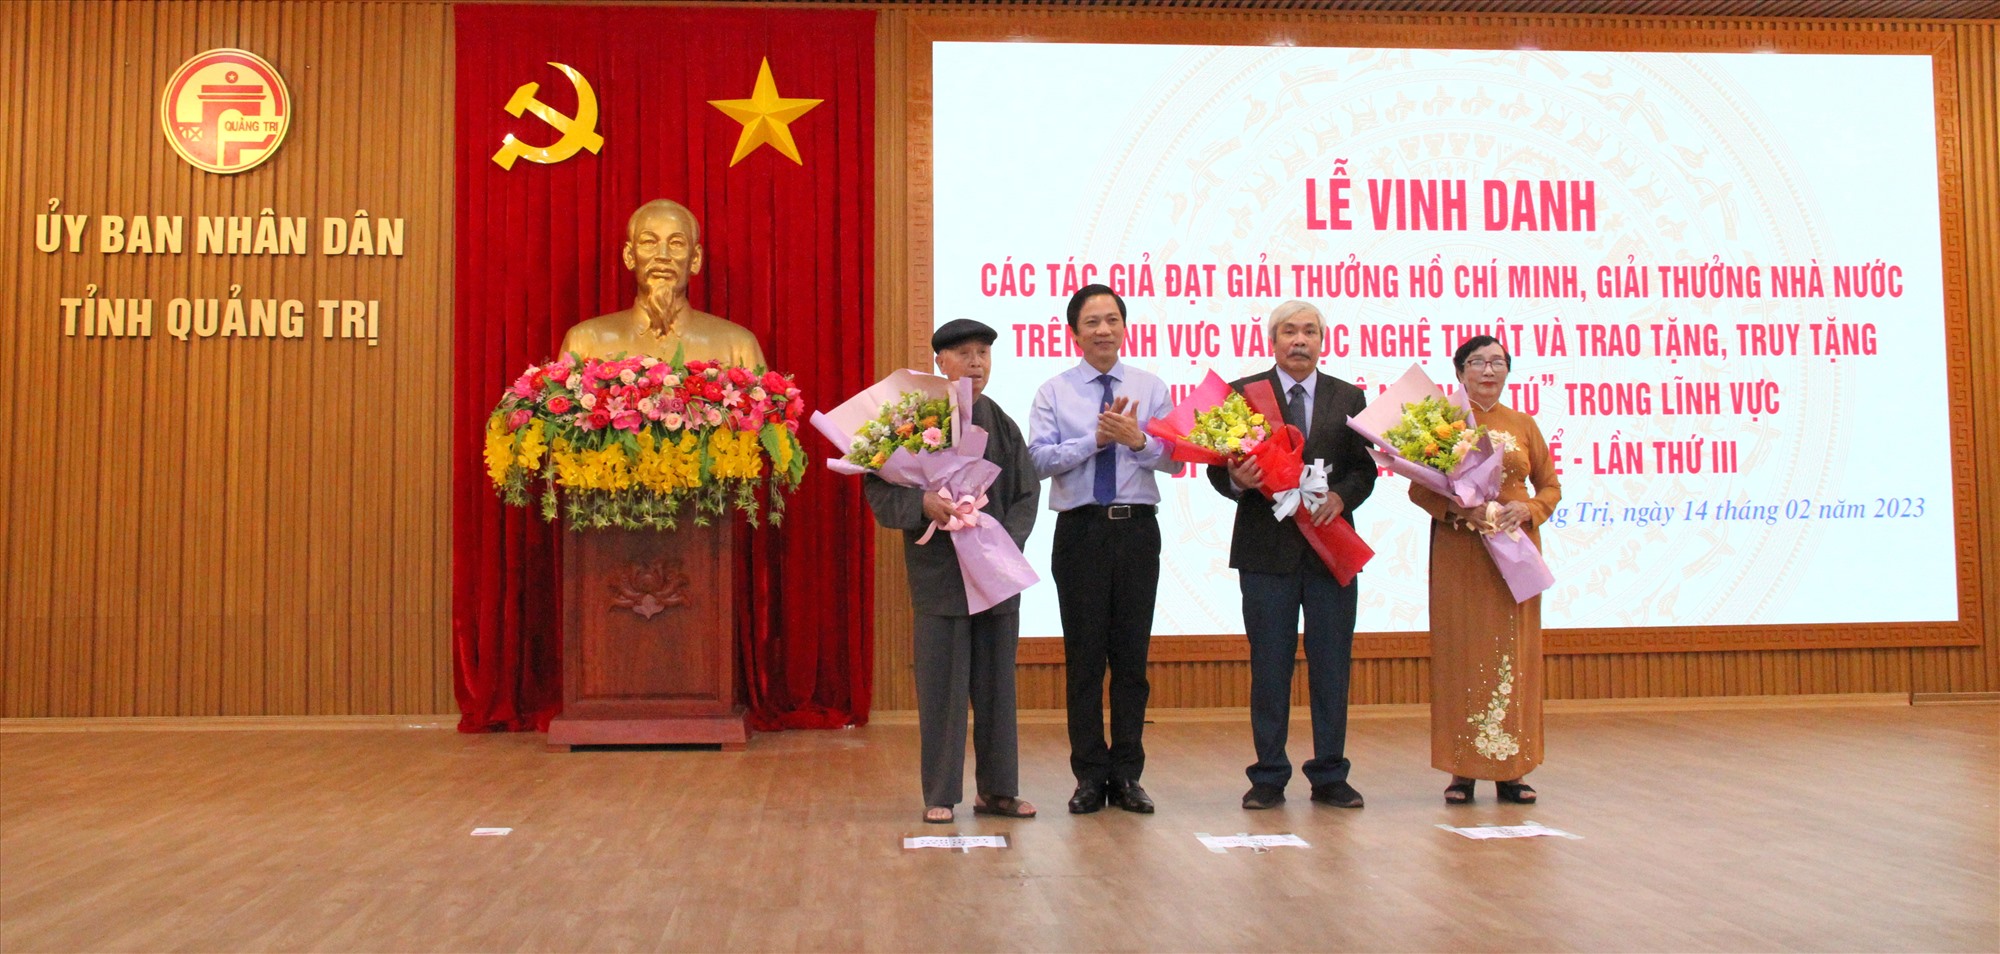 Phó Chủ tịch UBND tỉnh Hoàng Nam tặng hoa cho các tác giả và thân nhân tác giả được tặng Giải thưởng Hồ Chí Minh, Giải thưởng Nhà nước trên lĩnh vực văn học nghệ thuật - Ảnh: M.Đ